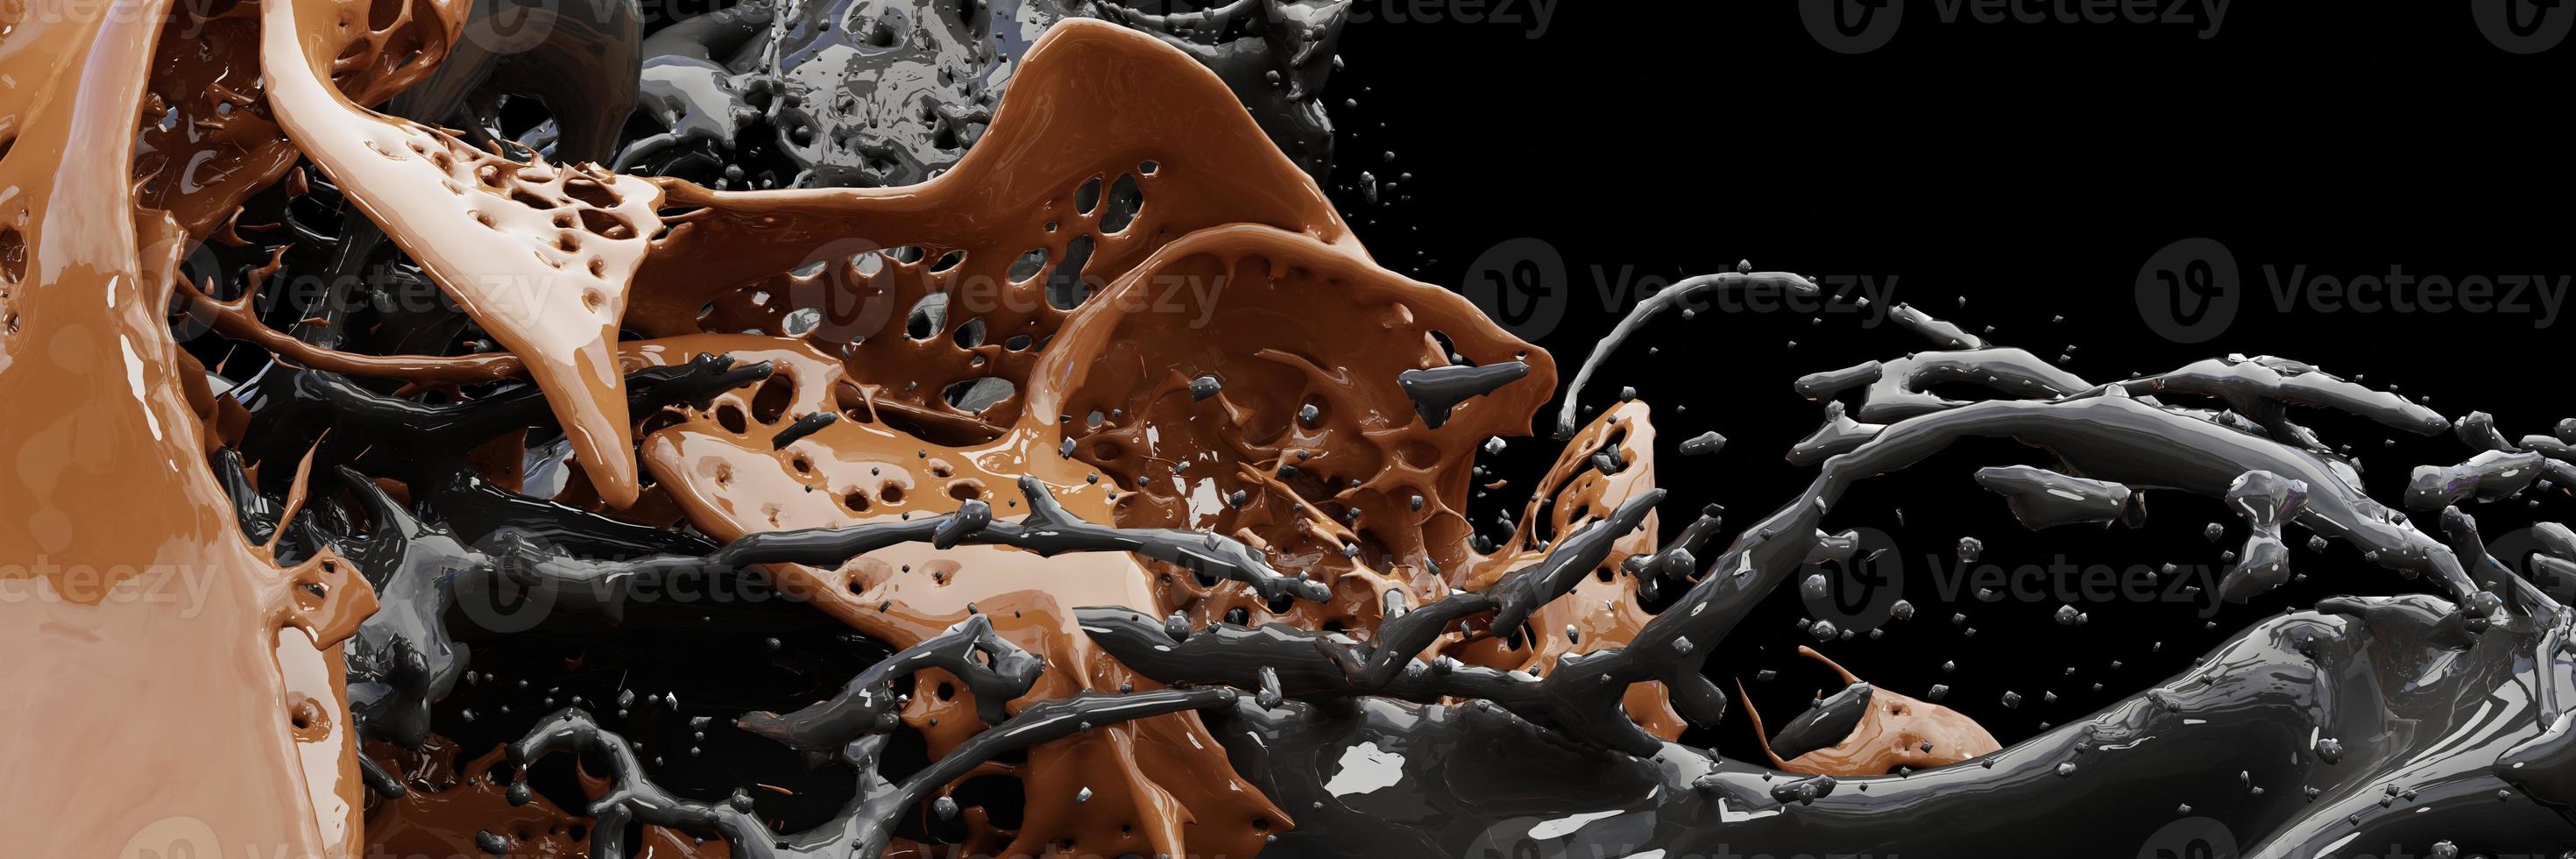 3D-Rendering, weiße Flüssigkeiten spritzen, abstrakter flüssiger Hintergrund, Kaffee-Splash-Konzept foto